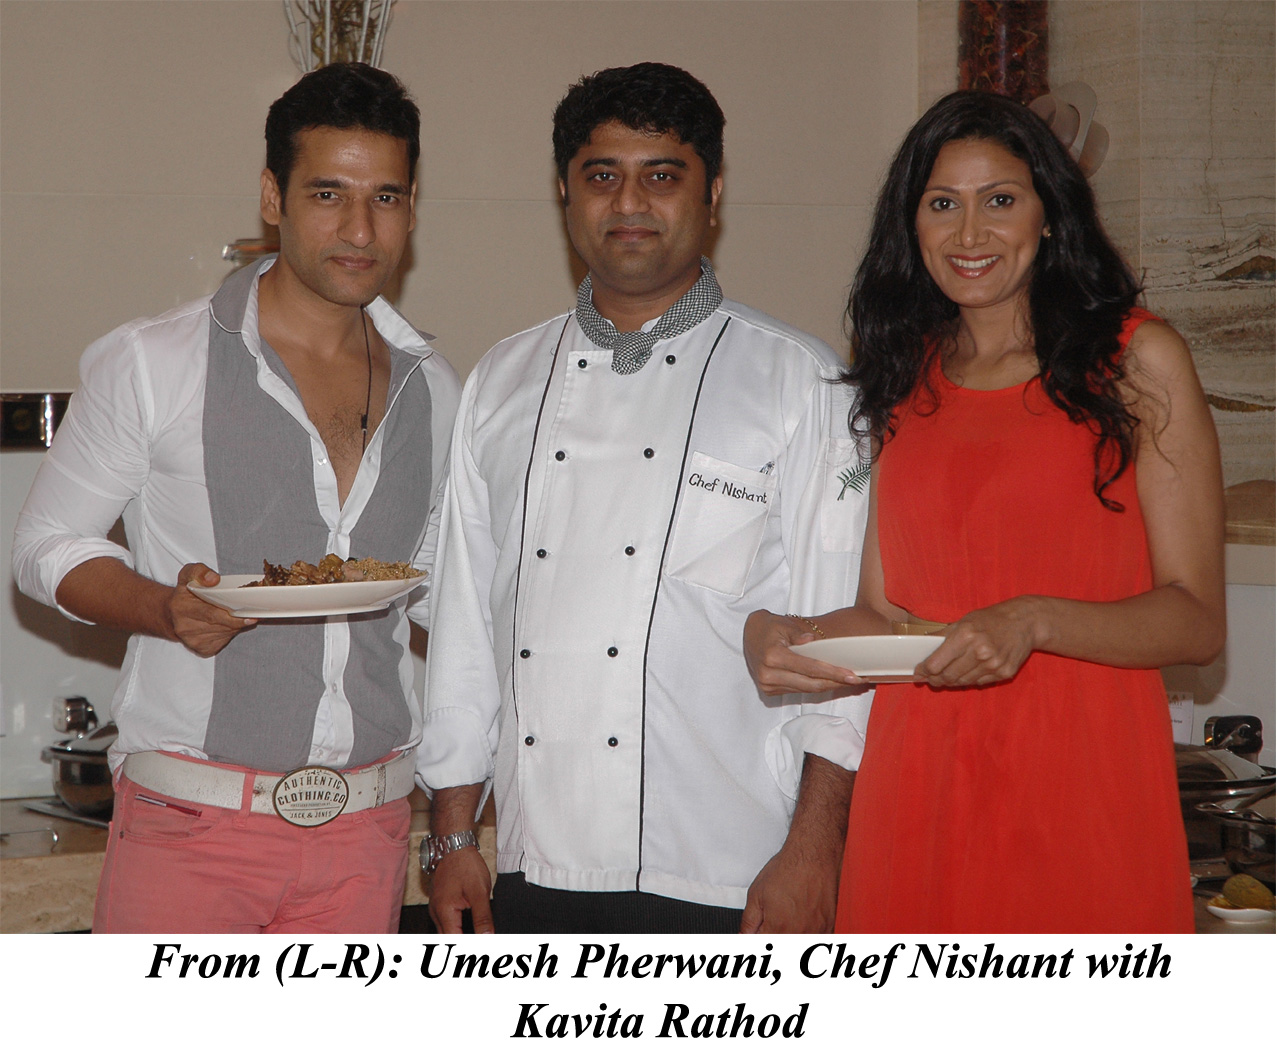 Umesh Pherwani, Chef Nishant with Kavita Rathod at the launch of Vita Latina on 23rd May 2013